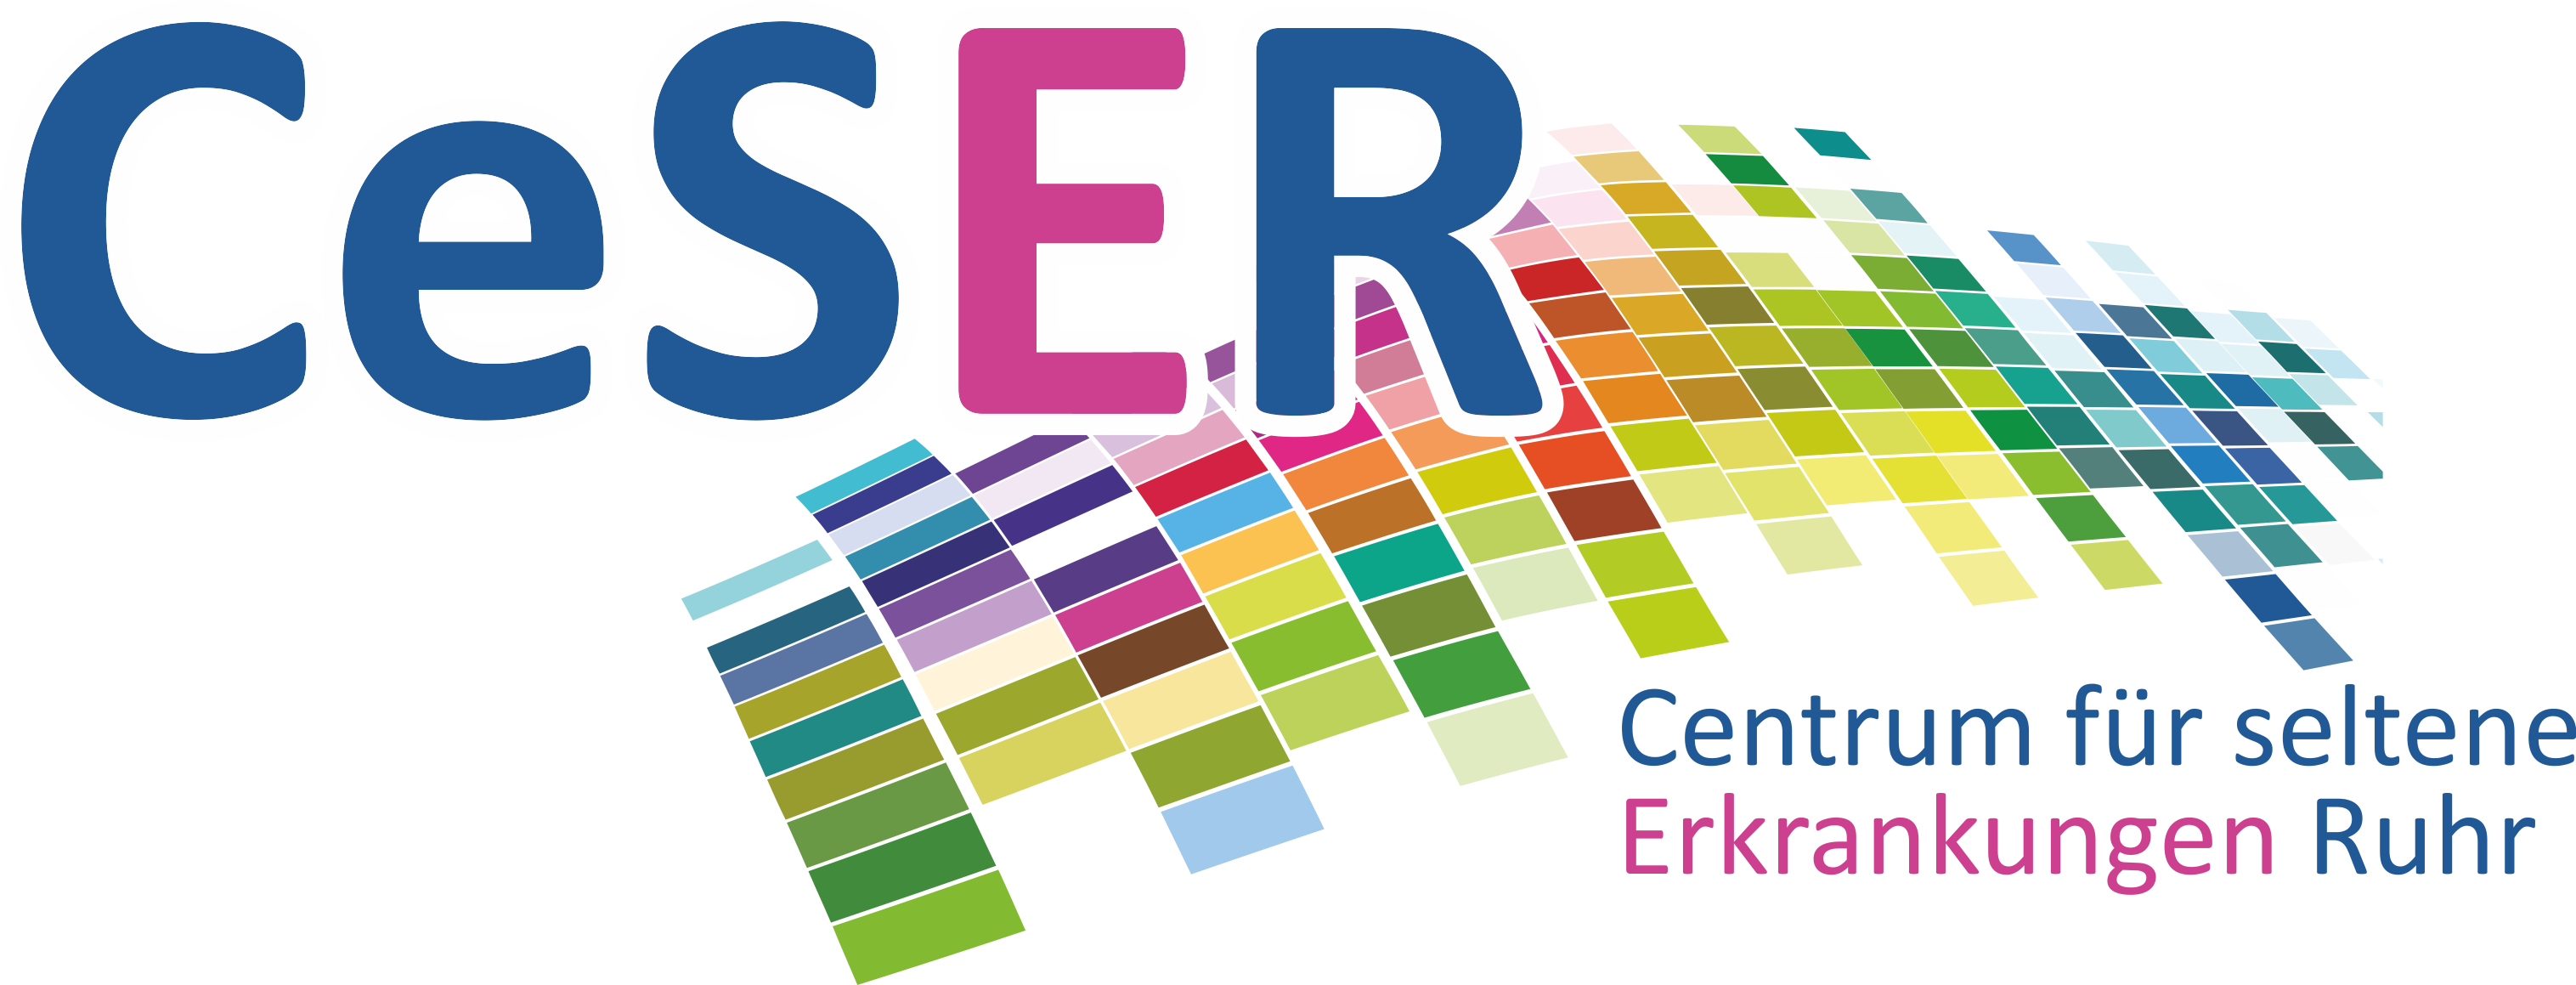 CeSER Logo